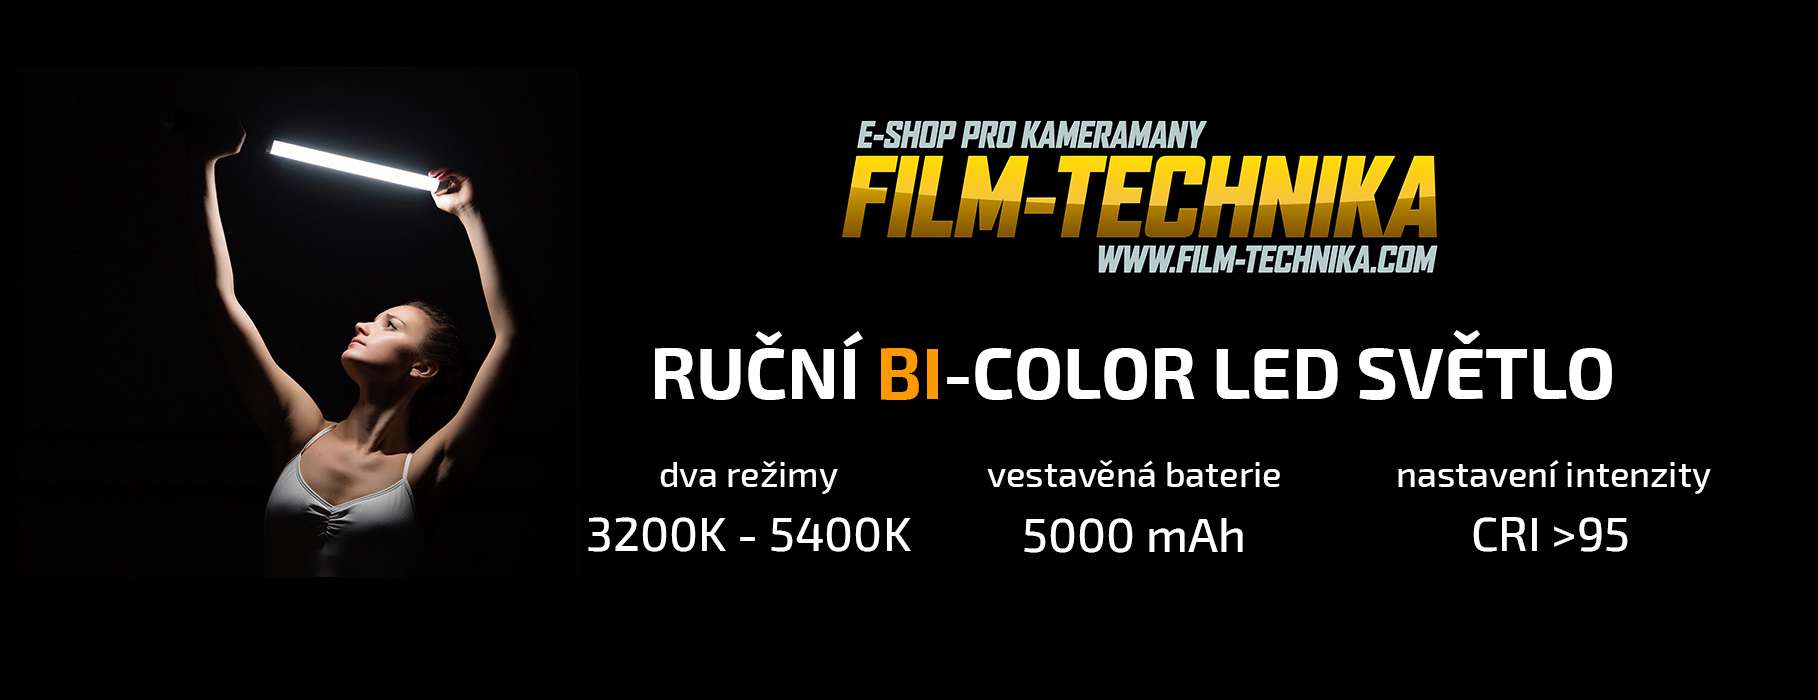 film-technika-bi-color-rucni-led-01-intext2